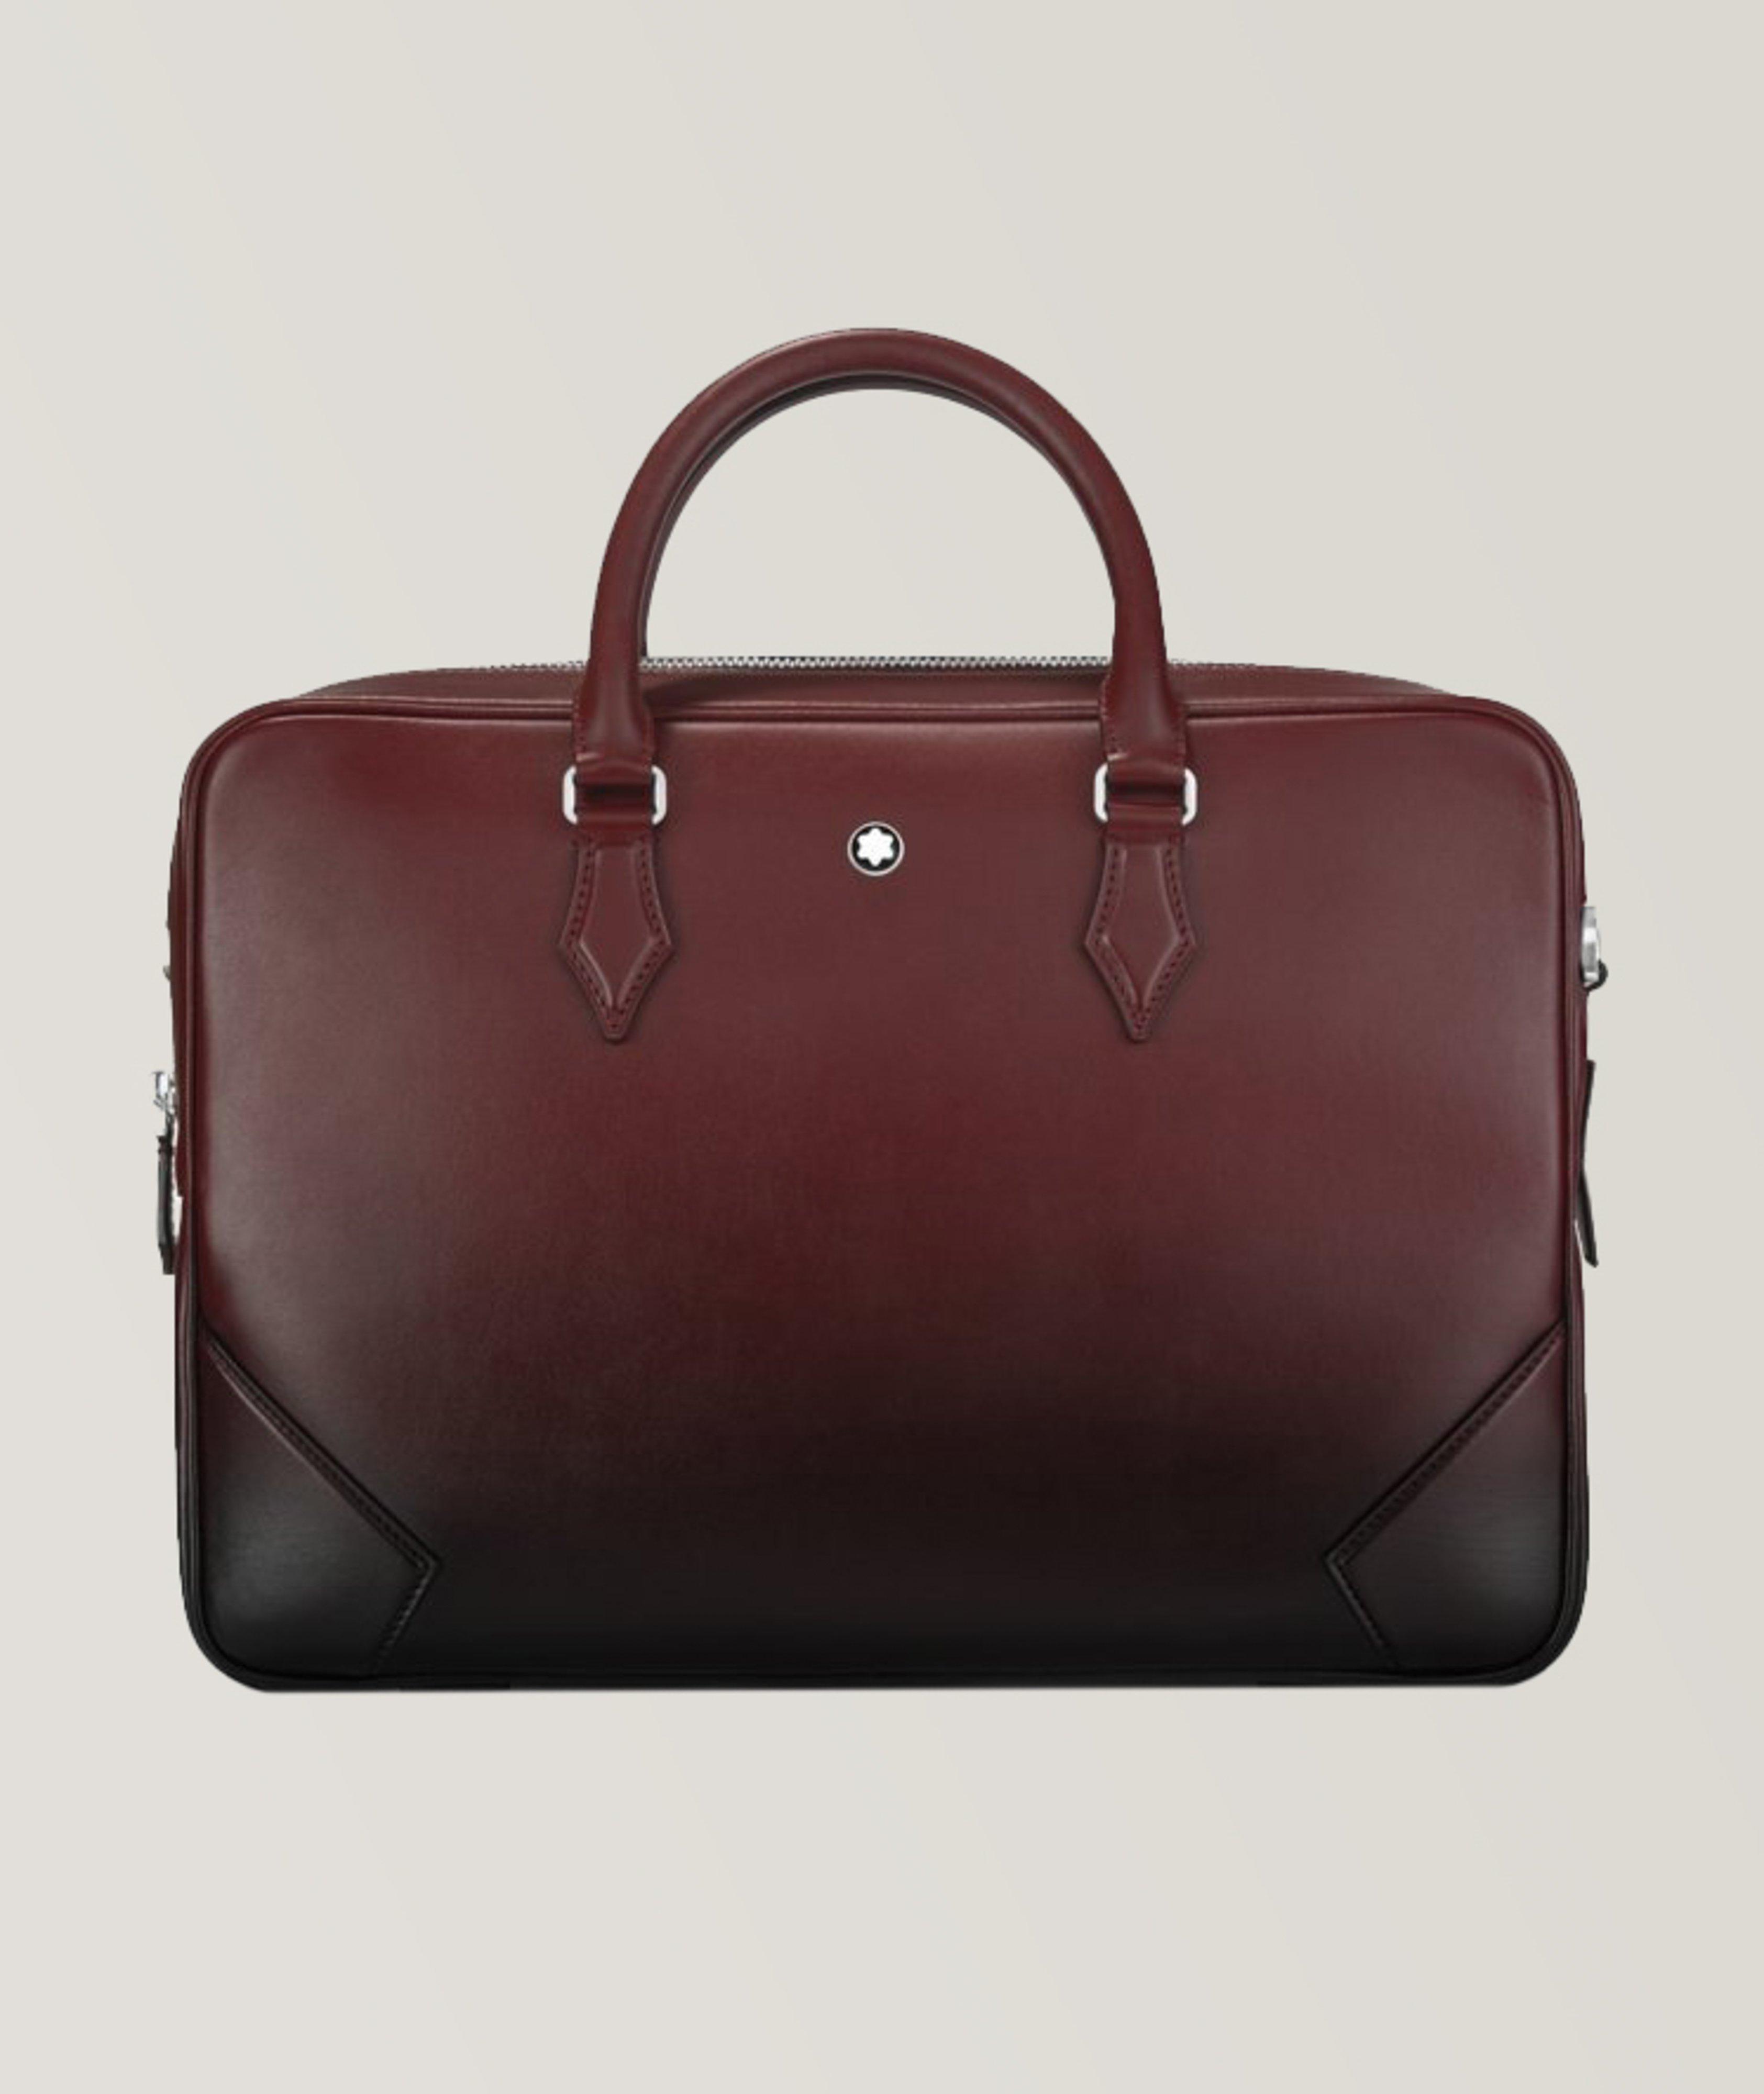 Meisterstück Calfskin Leather Briefcase